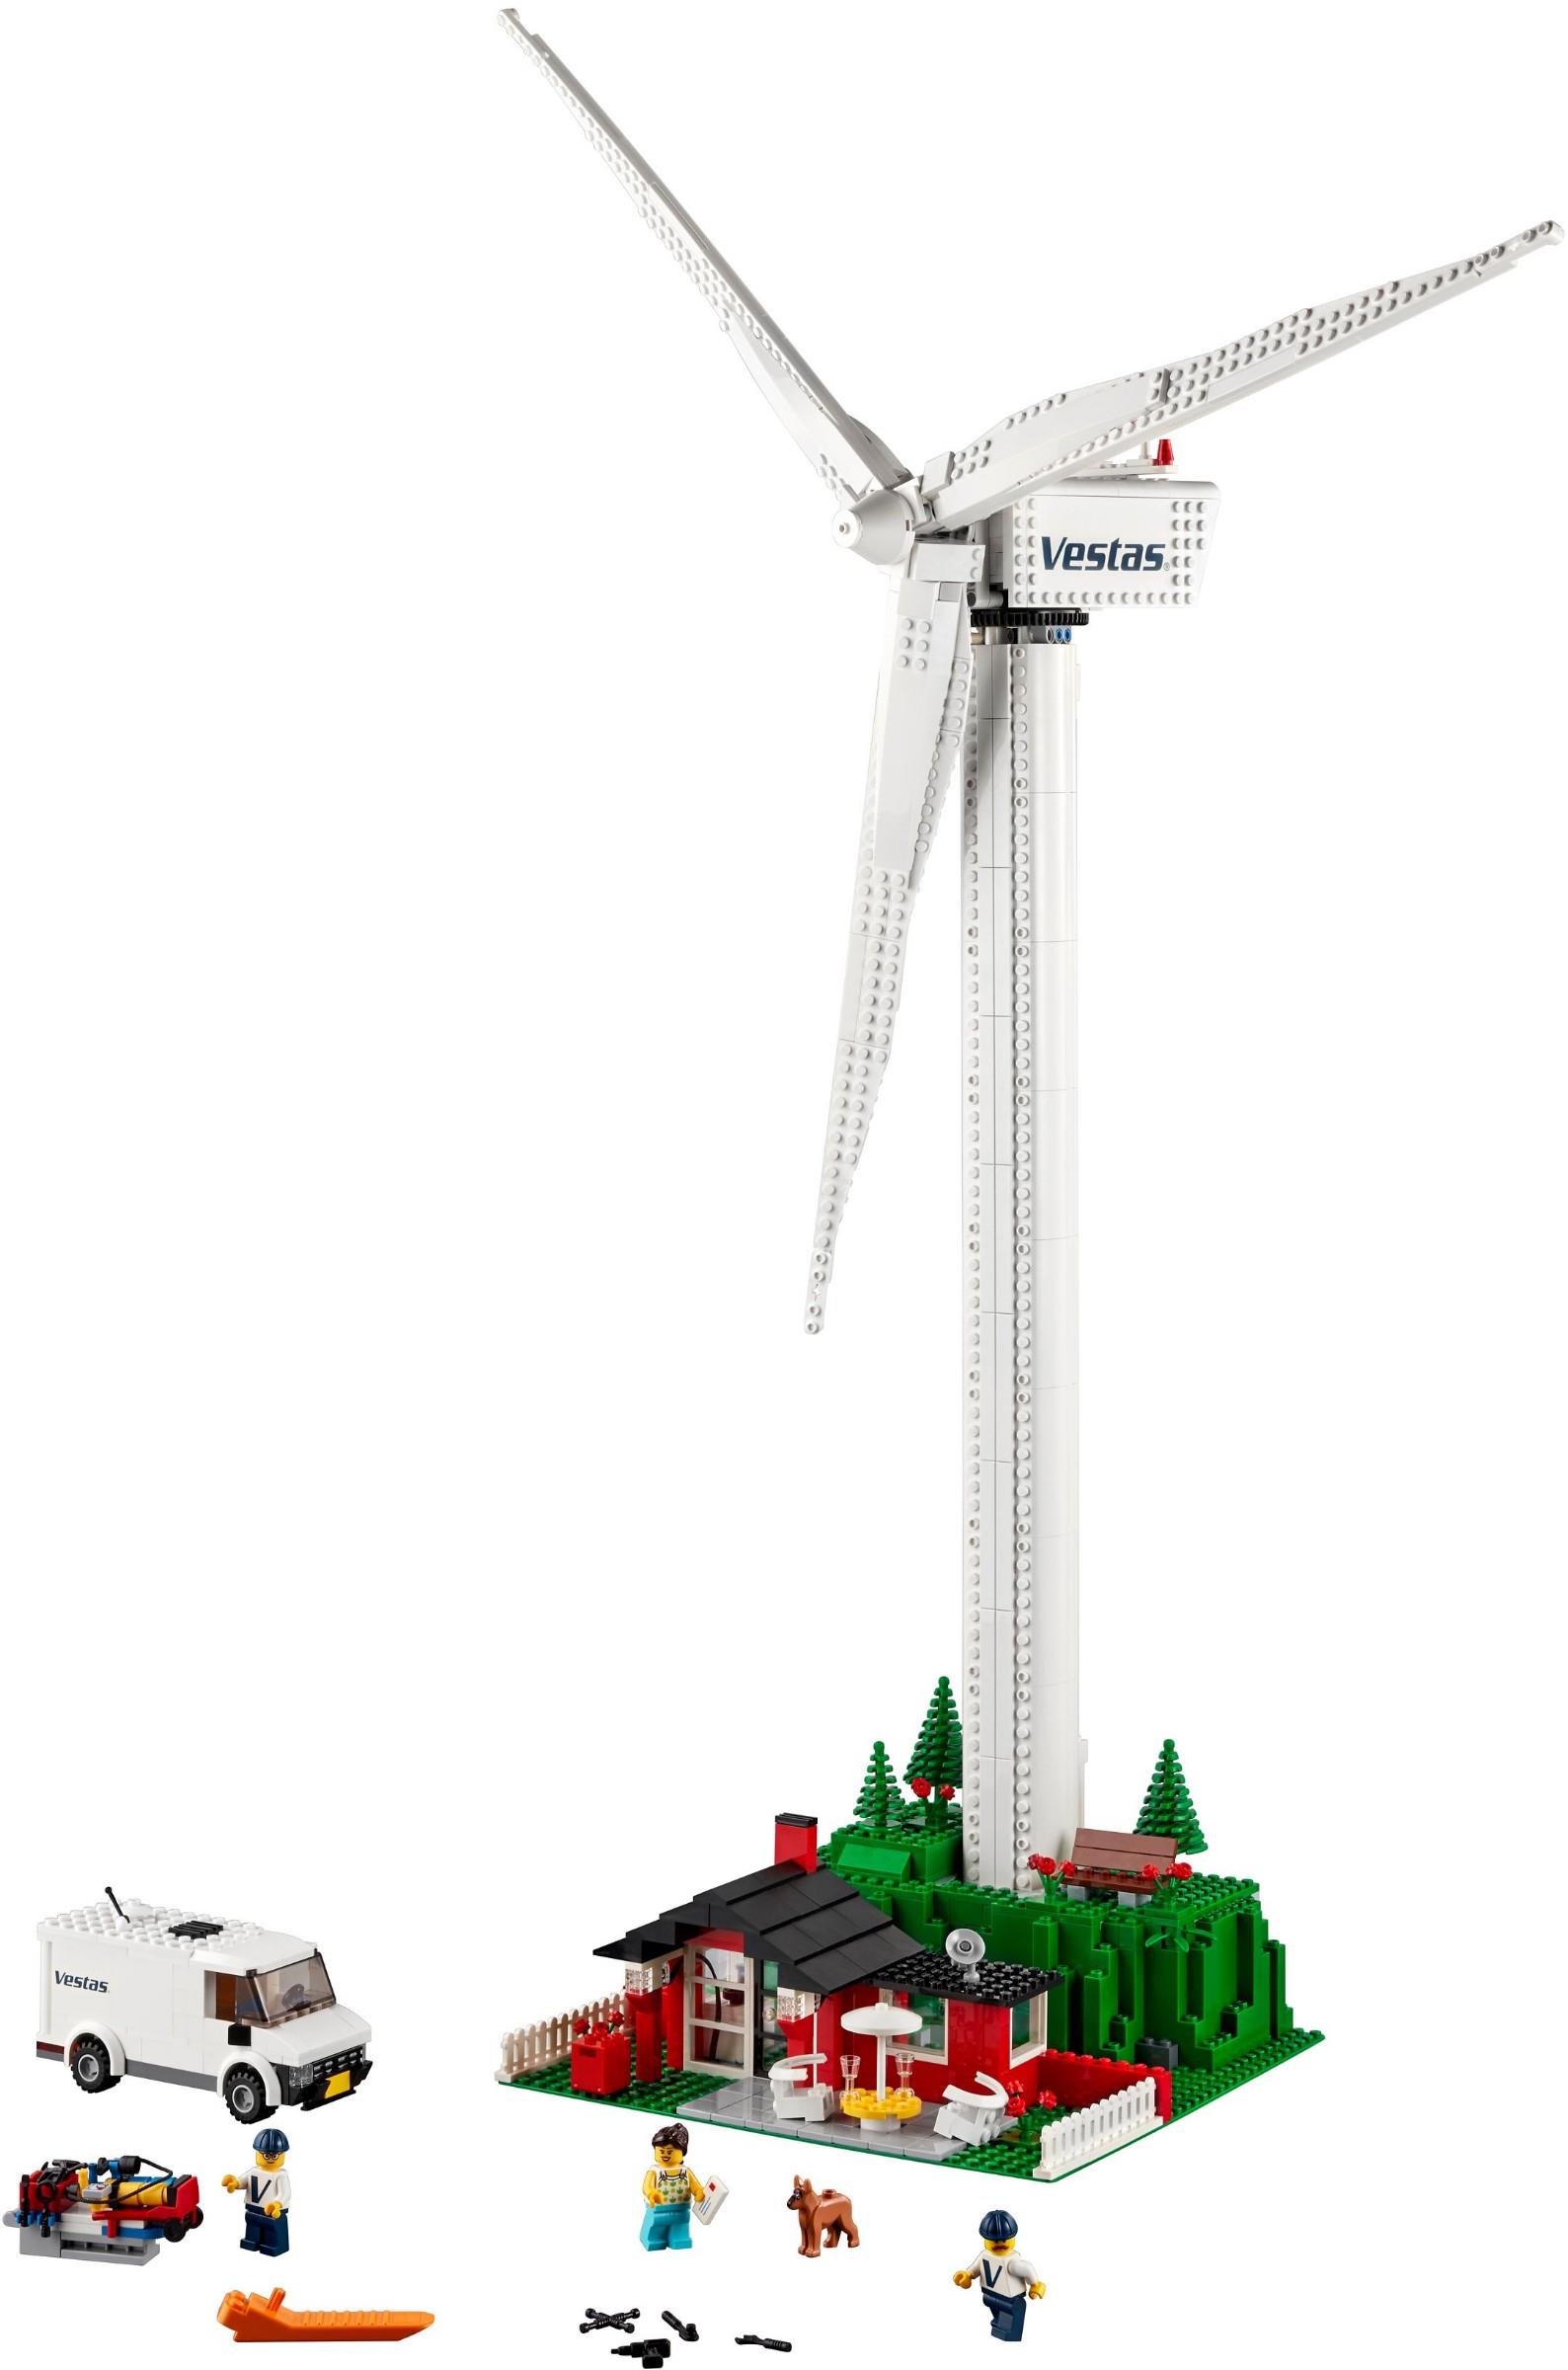 klasse Robust Sæt tøj væk LEGO 10268 Vestas Wind Turbine | BrickEconomy